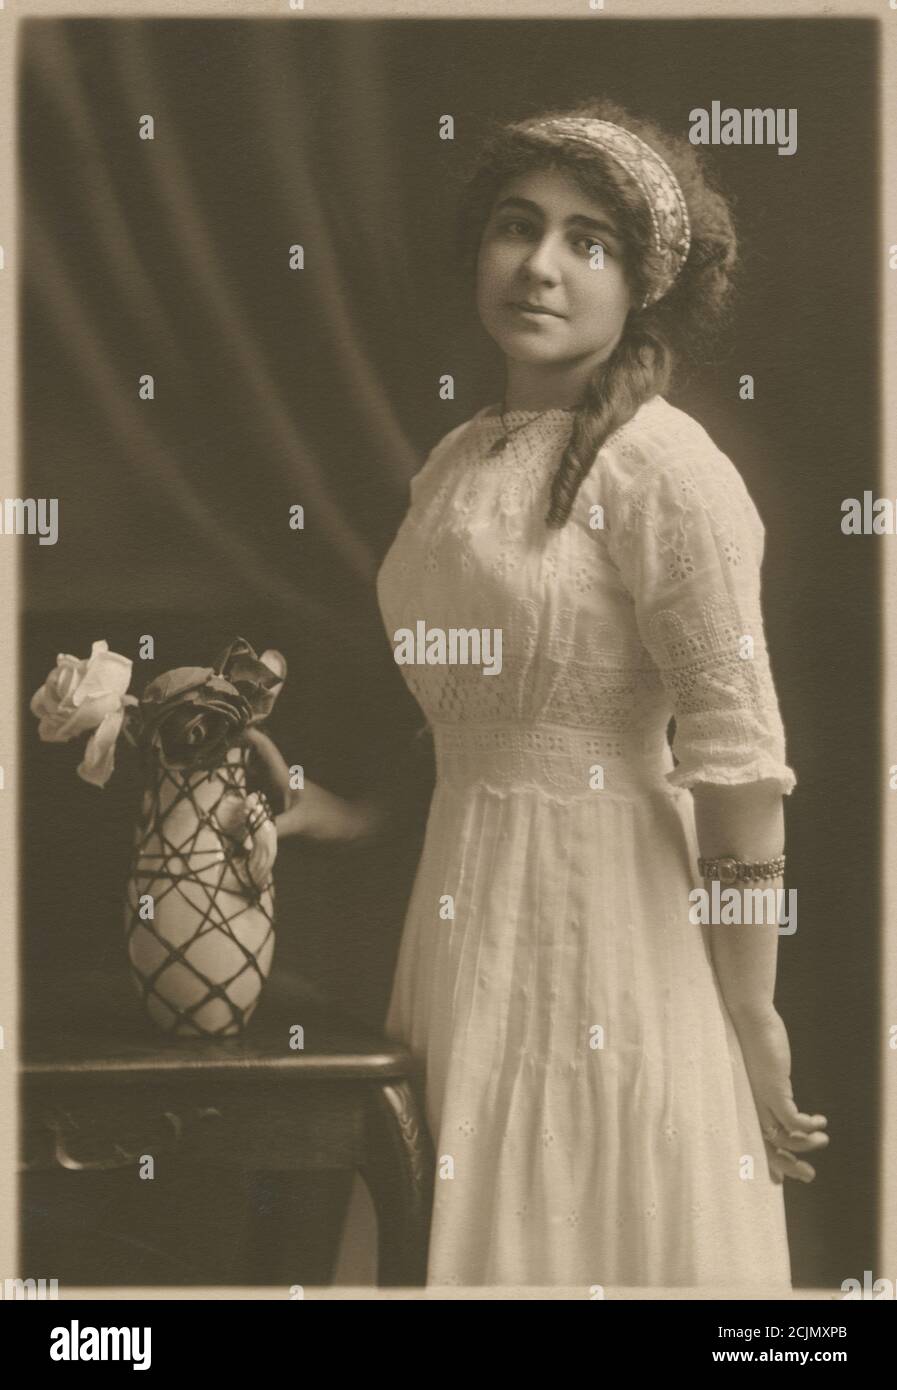 Antica fotografia c1920, ritratto di una donna, età circa 20-24, con un vaso di fiori. Posizione esatta sconosciuta, probabilmente New England, USA. FONTE: FOTOGRAFIA ORIGINALE Foto Stock